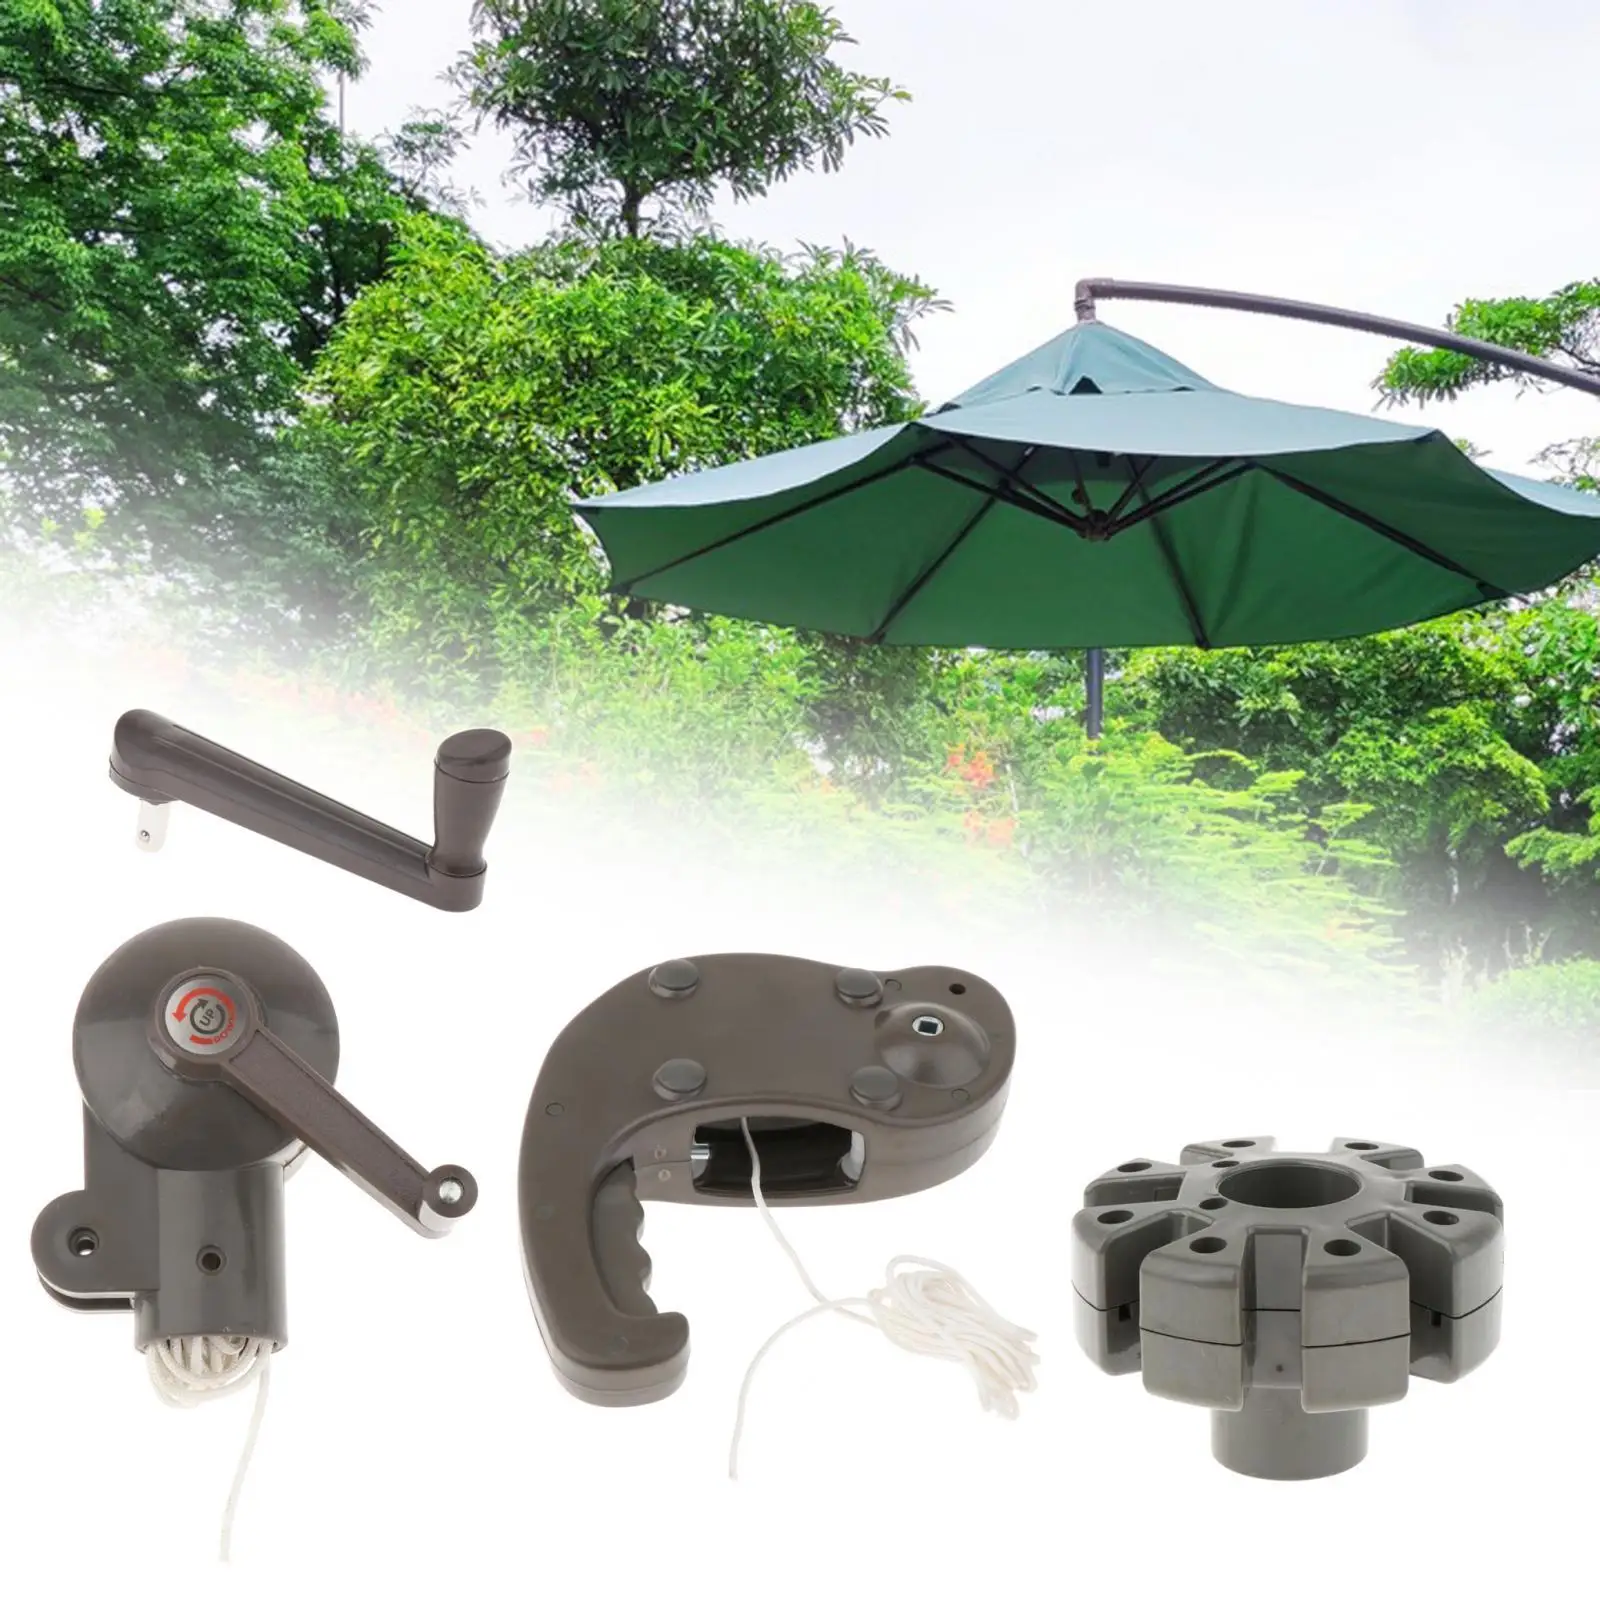 Patio Umbrella Accessorie Parasol Crank Handle Leisure Adjustable Deck Umbrella Outdoor Umbrella Accessories Heavy Duty Umbrella